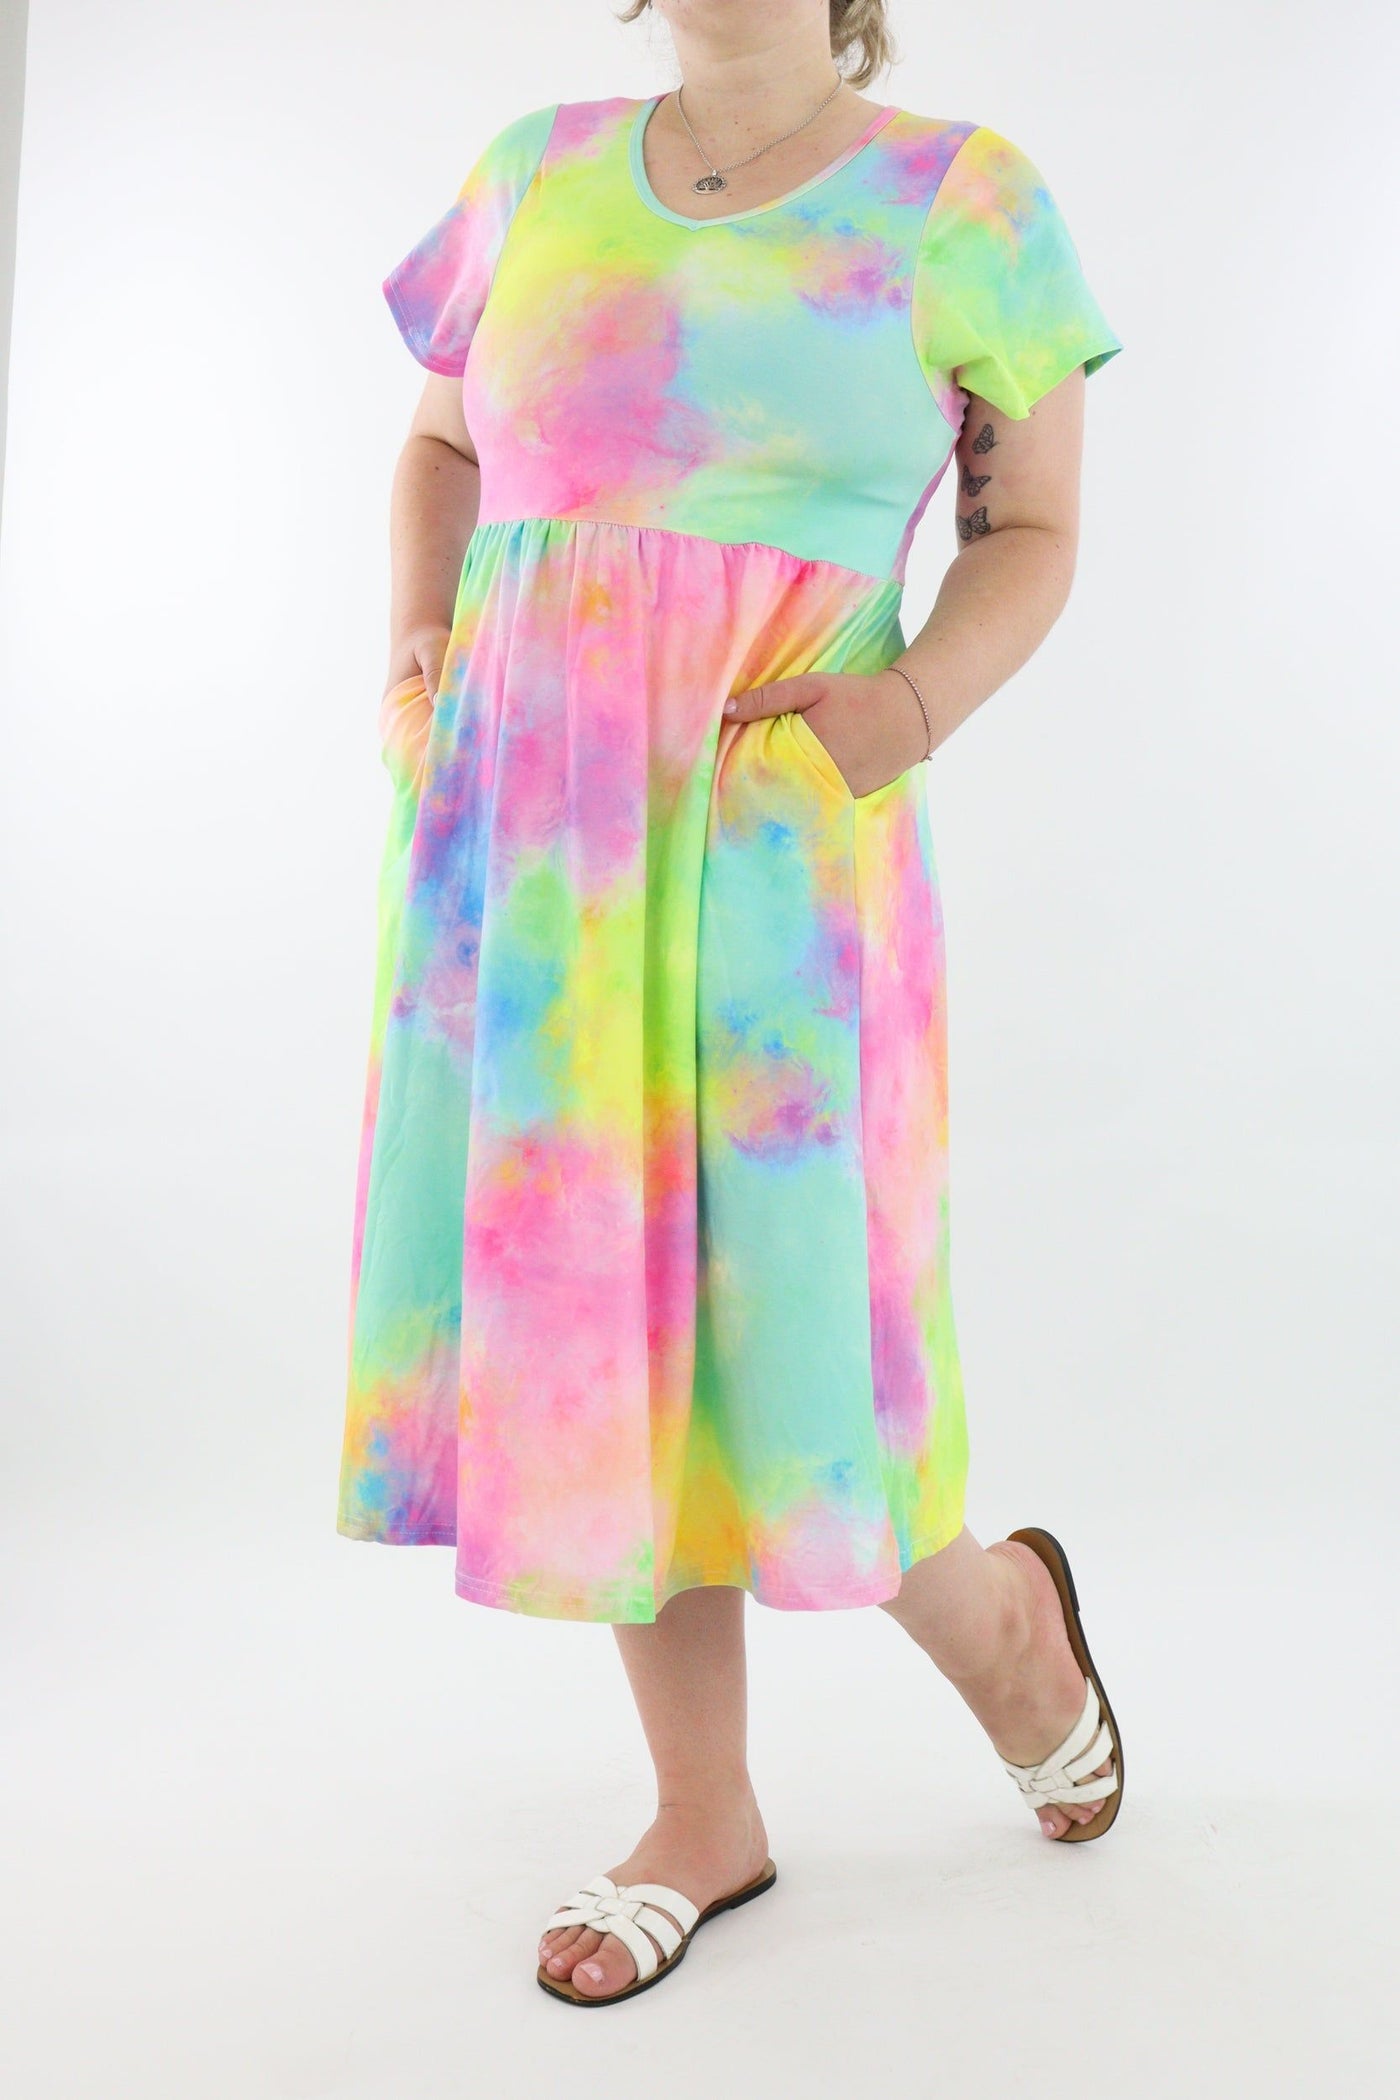 Fairy Floss - A-Line Dress - Midi Length - Side Pockets - Pawlie